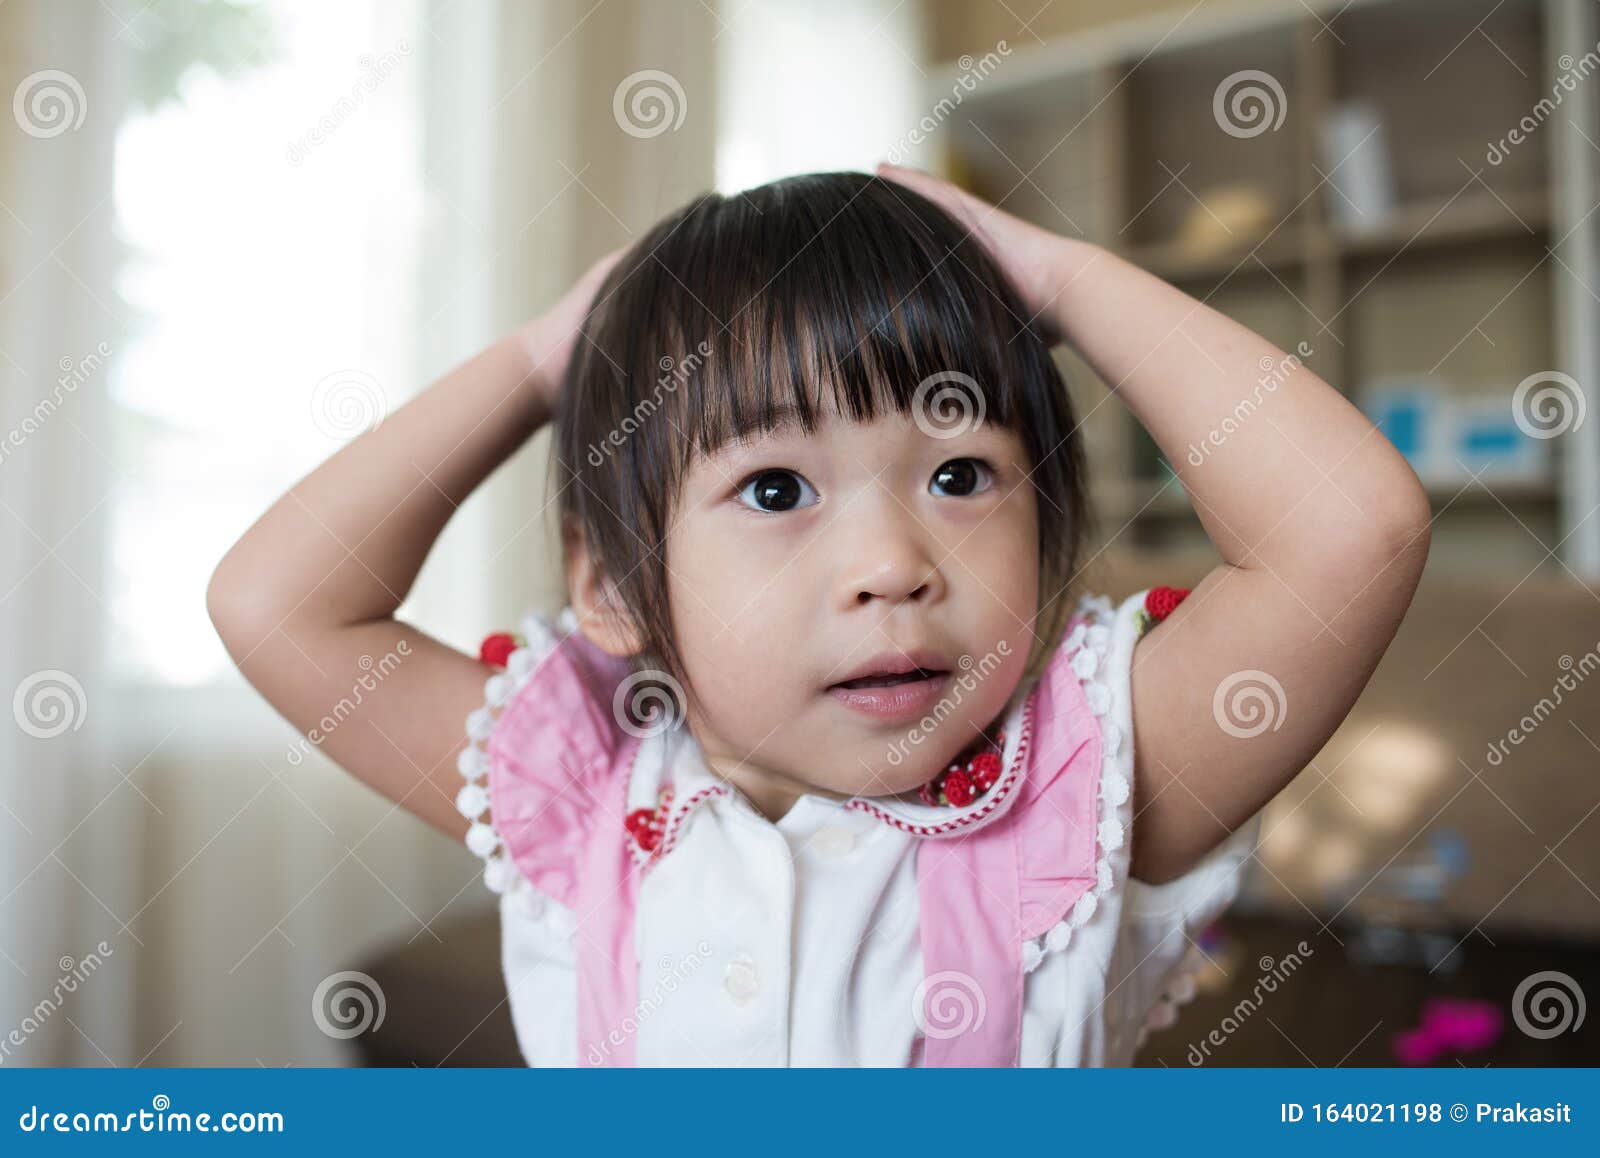 фото маленькой девочки азиатки фото 96